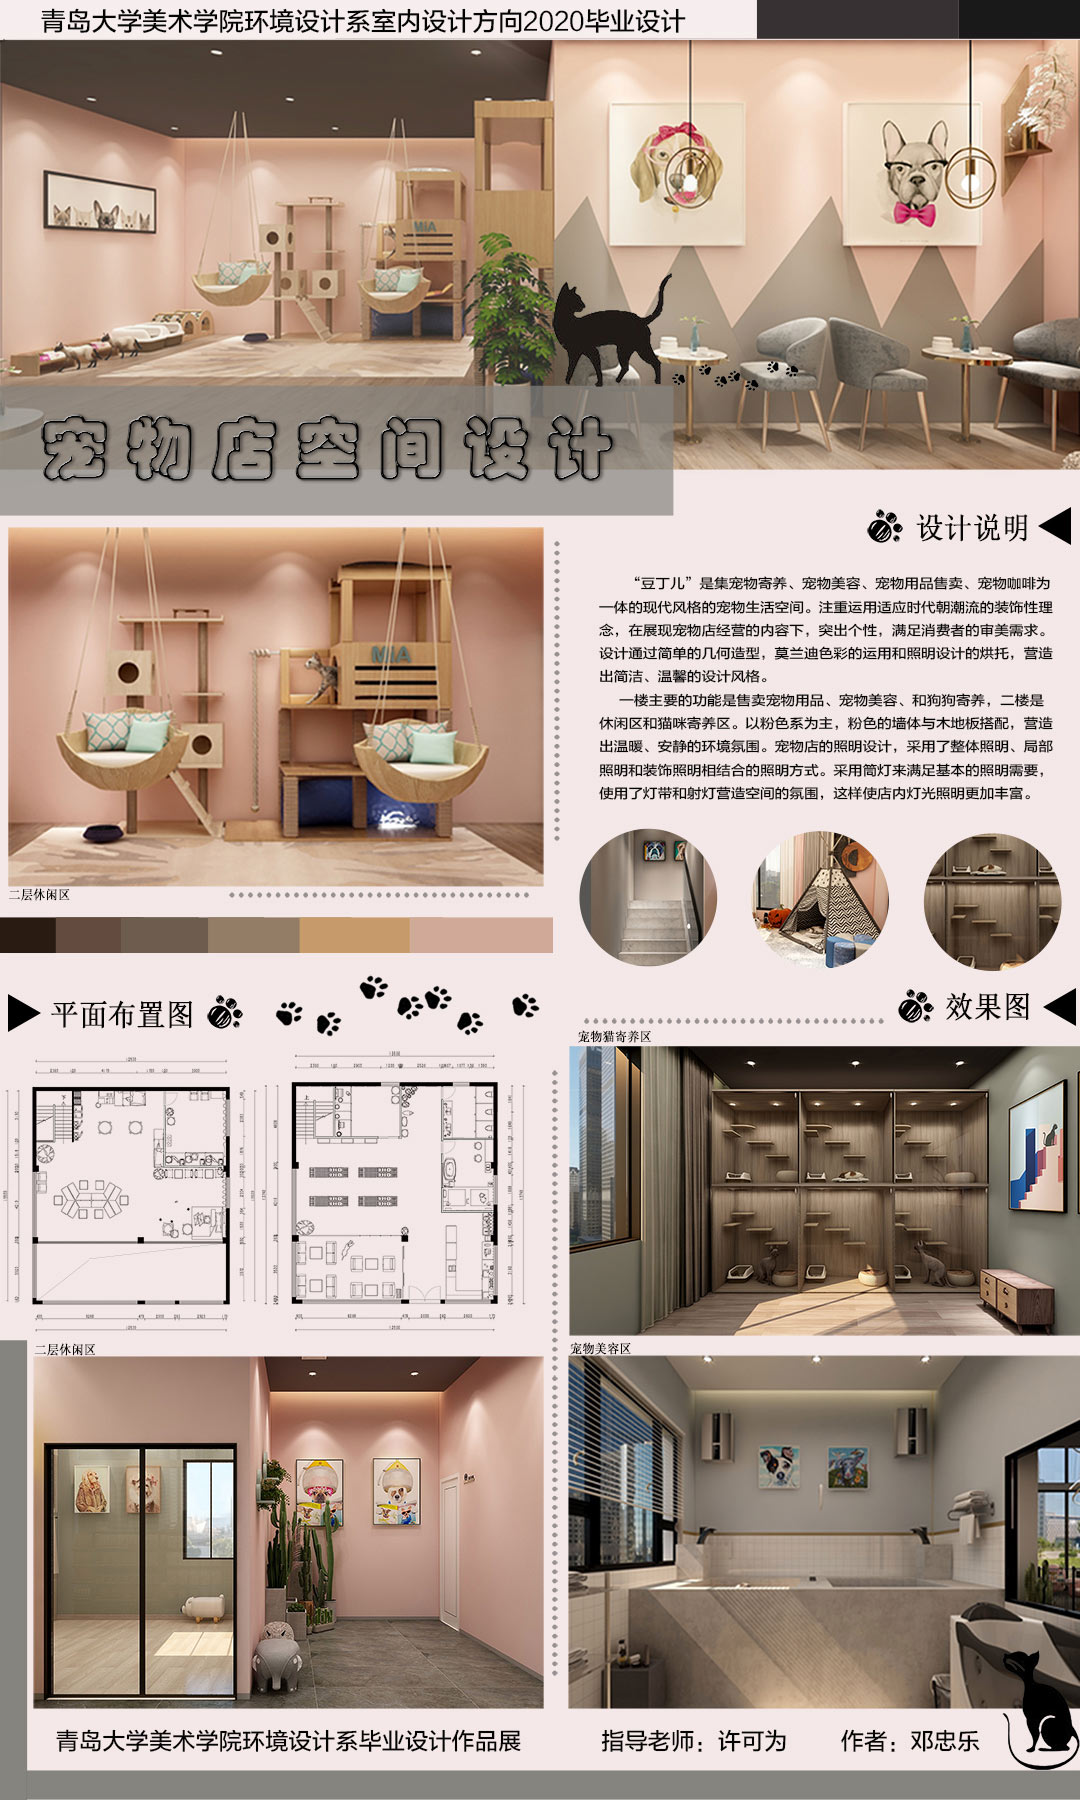 青岛大学 | 室内设计 | 《 “豆丁儿”宠物店室内空间设计》 创作者：邓忠乐  指导老师：许可为